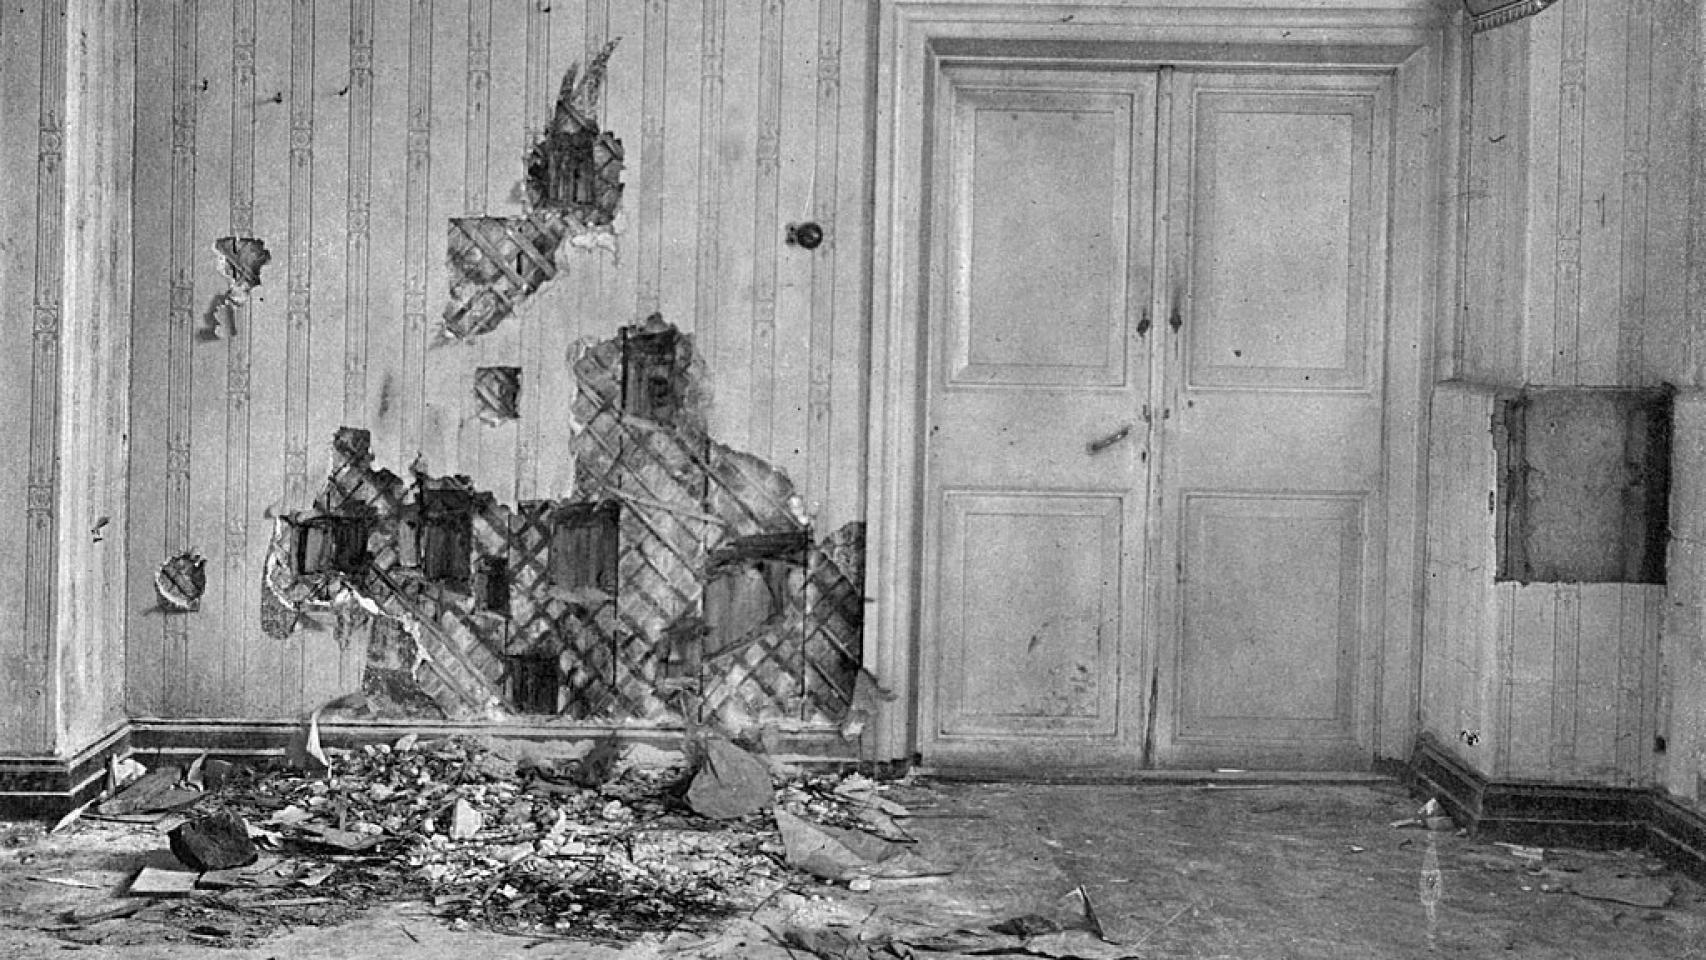 Sótano de la casa Ipatiev tras la ejecución. 1919